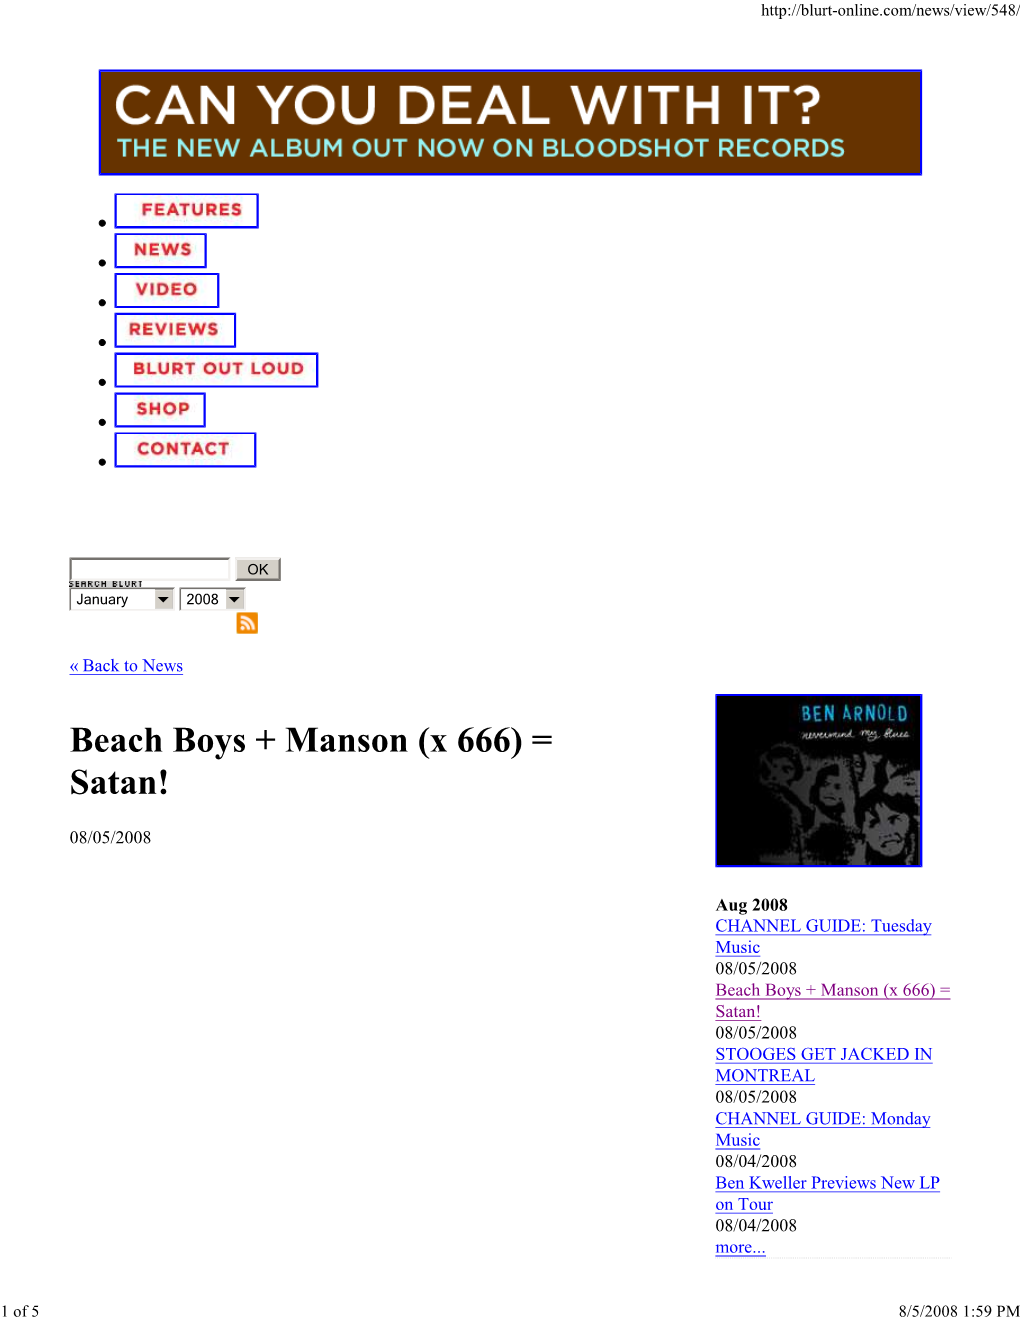 Beach Boys + Manson (X 666) = Satan!